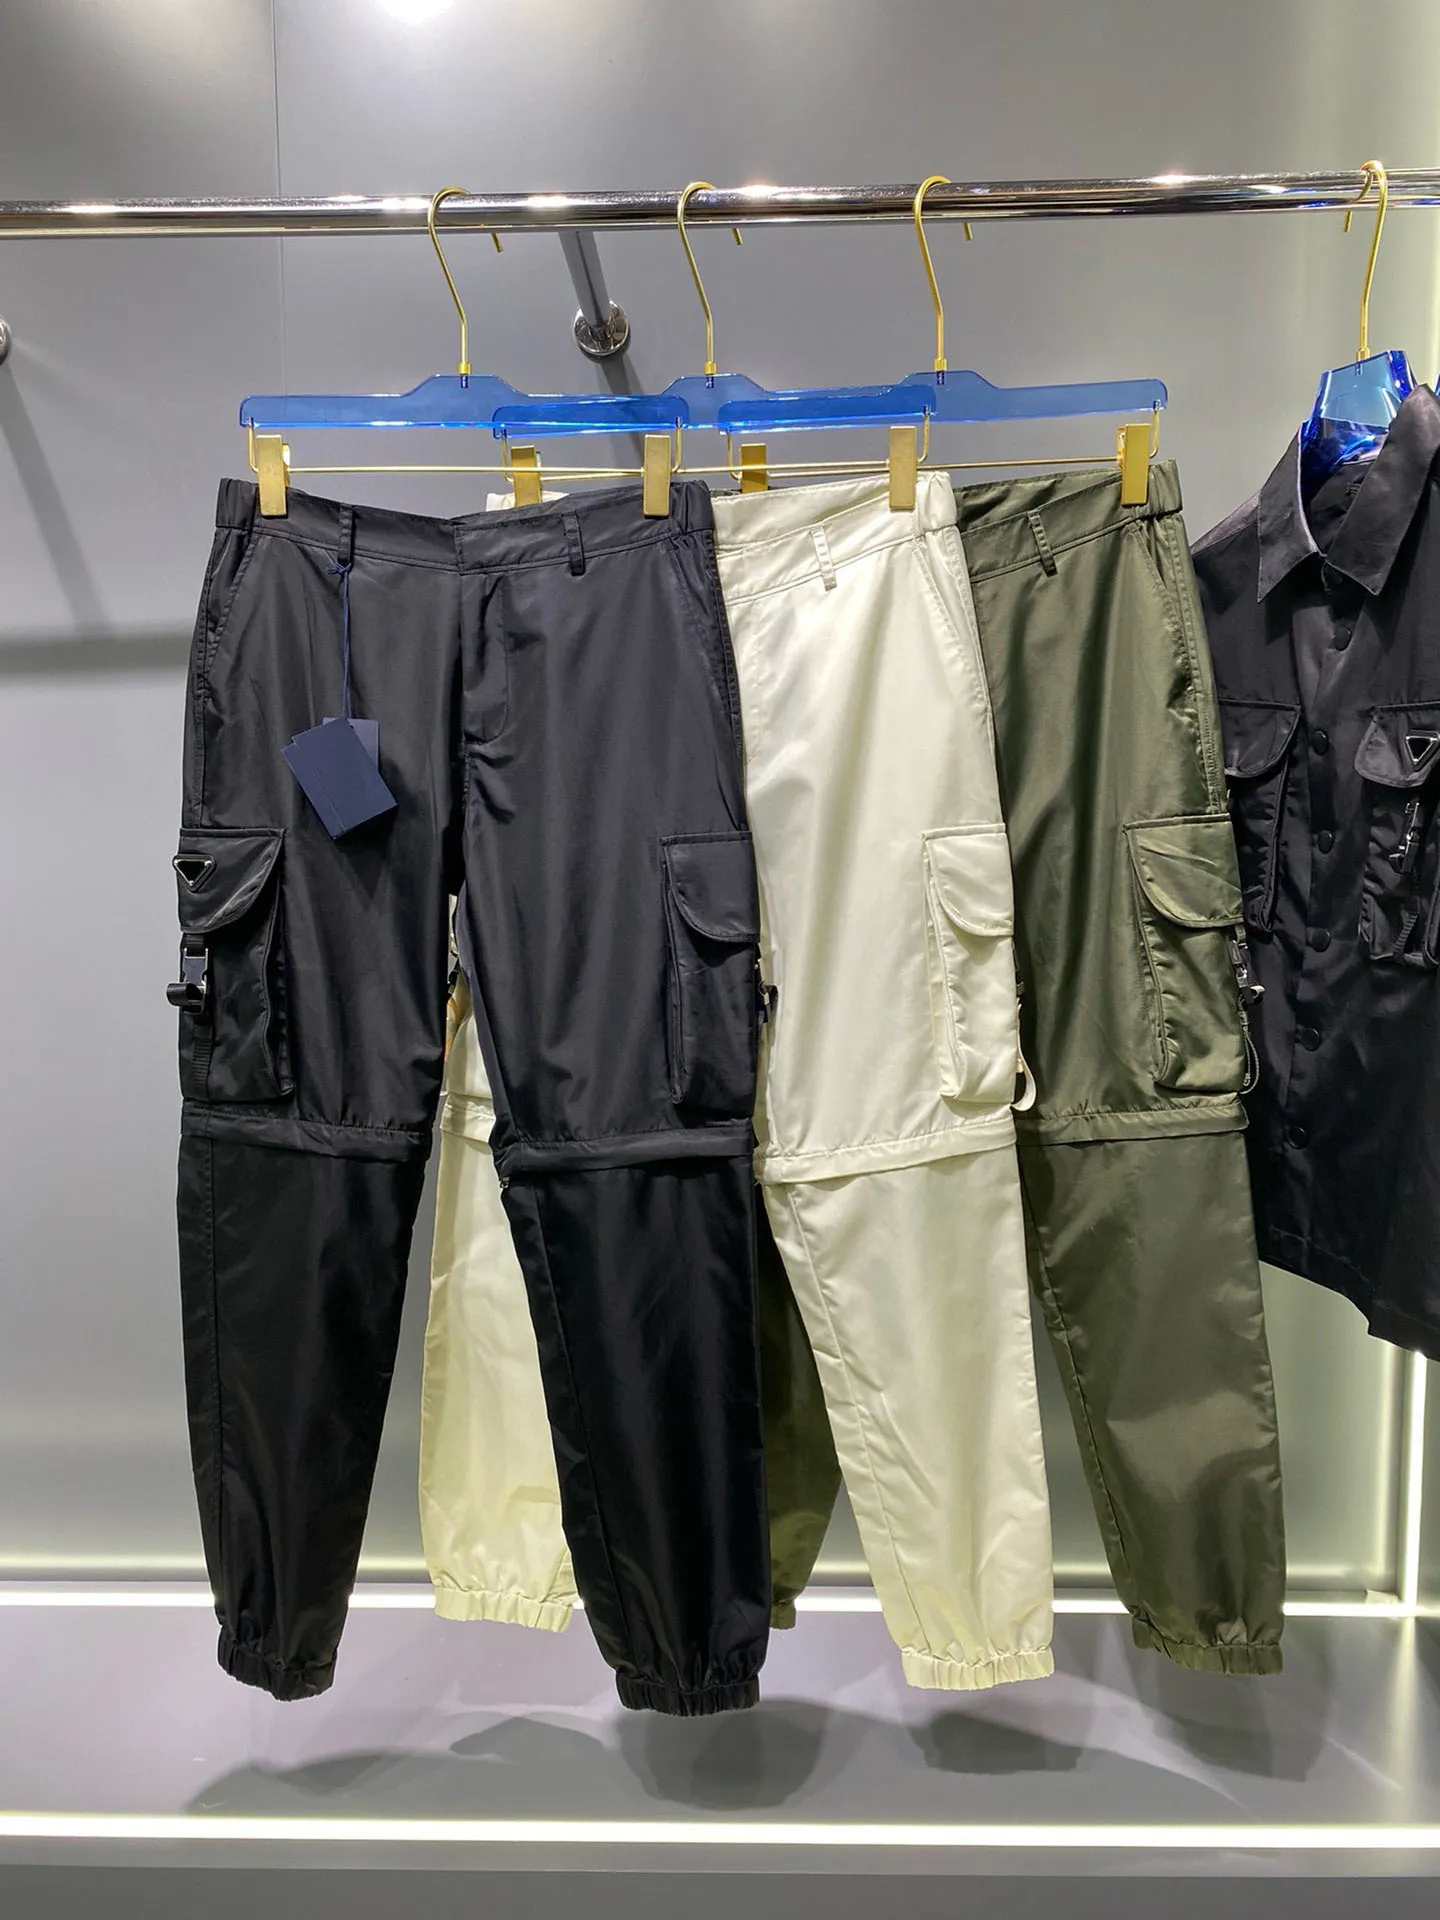 Hoogwaardige nieuwe herenbroeken functionele broek pijpen afneembare vrachtbroeken hightend merk top designer broek